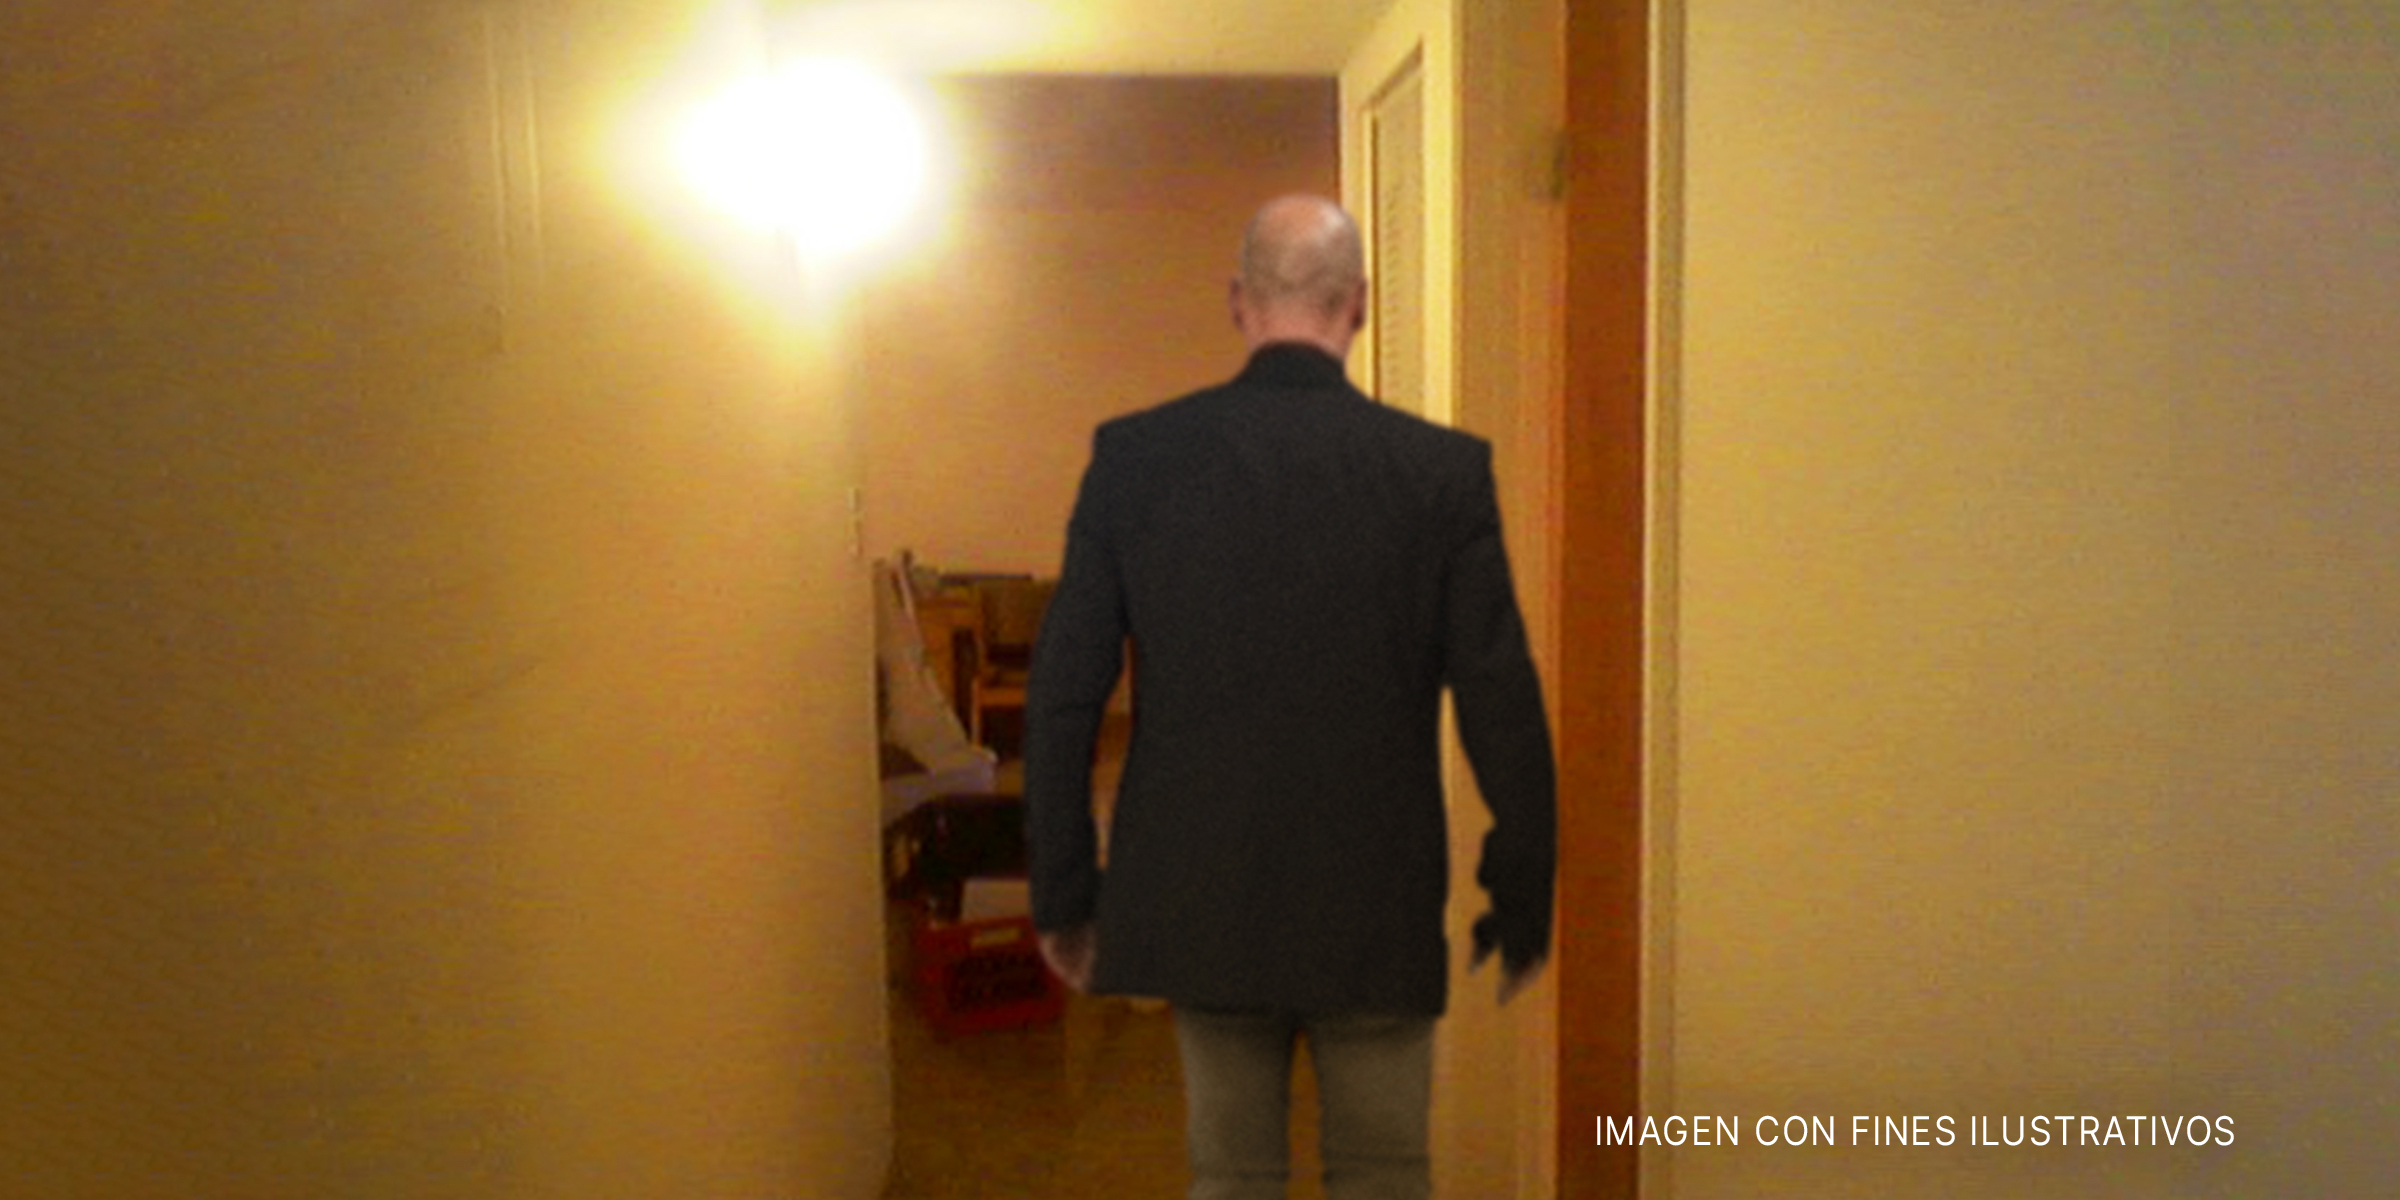 Hombre entra en una habitación. | Foto: Shutterstock Flickr.com/kurmbox (CC BY-SA 2.0)